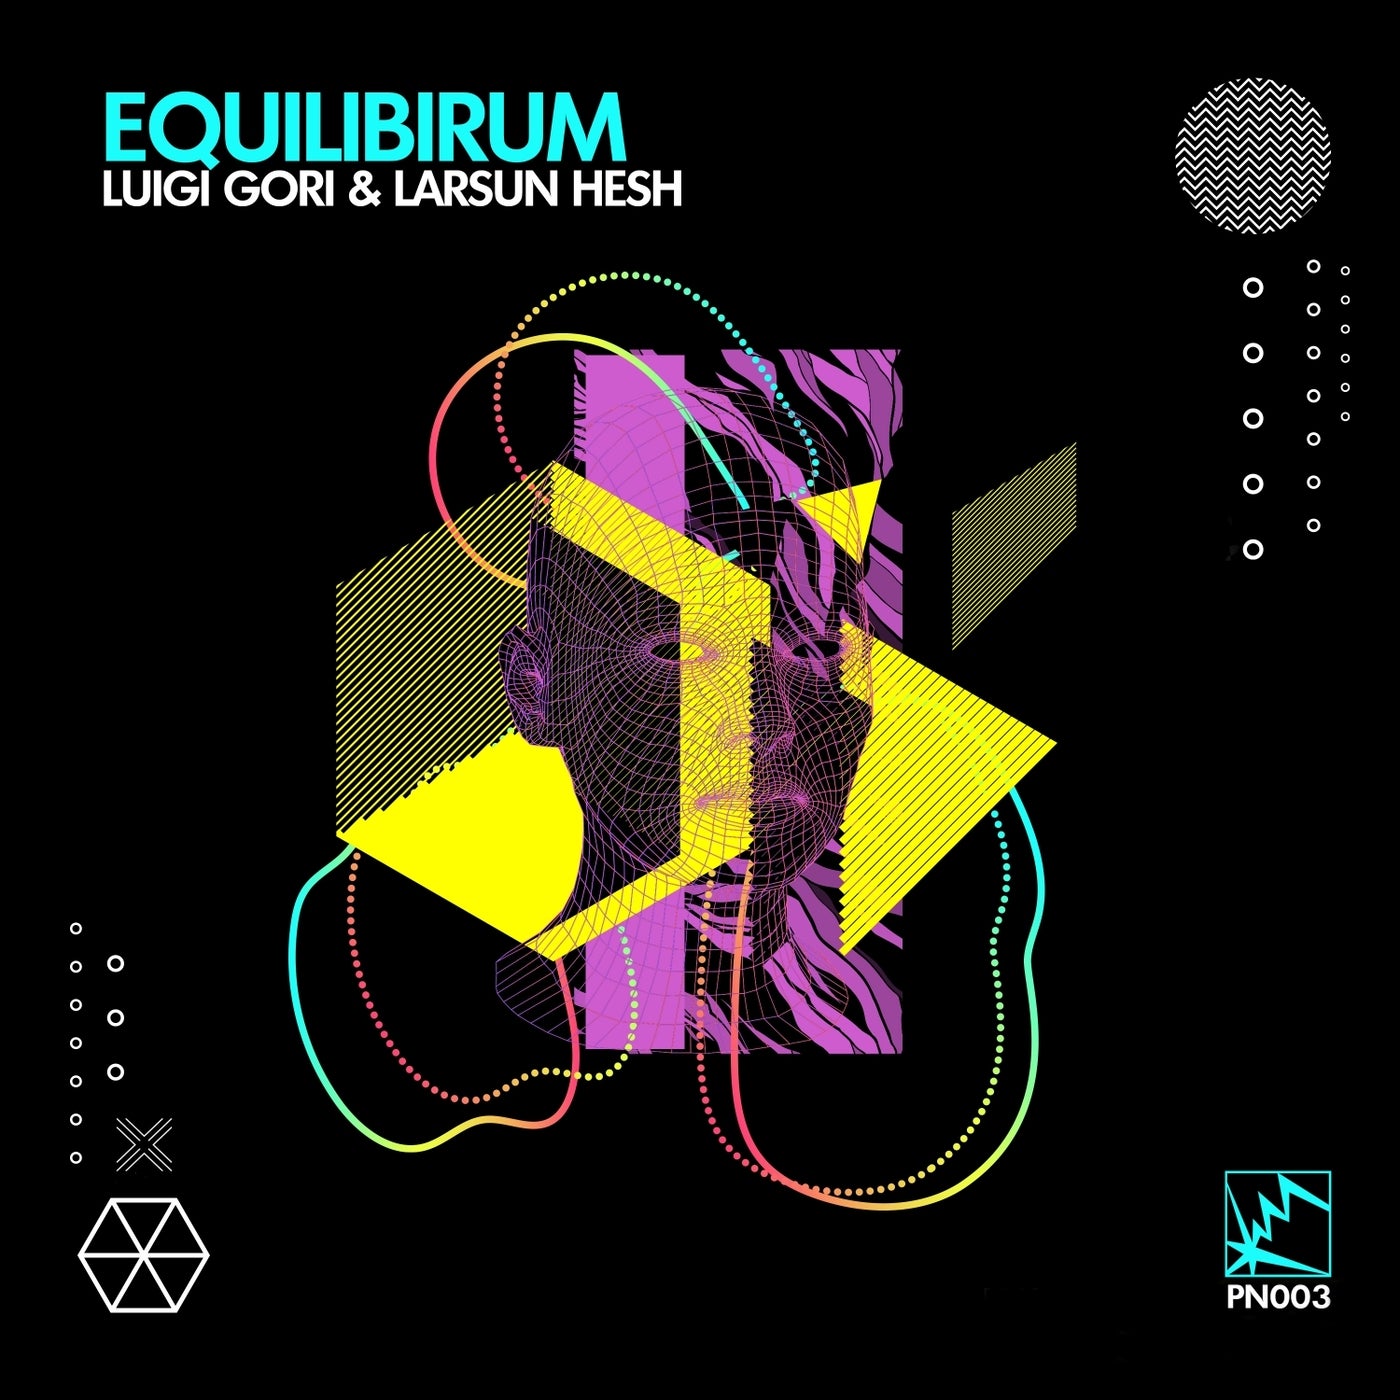 Luigi Gori, Larsun Hesh – Equilibrium [PN003]